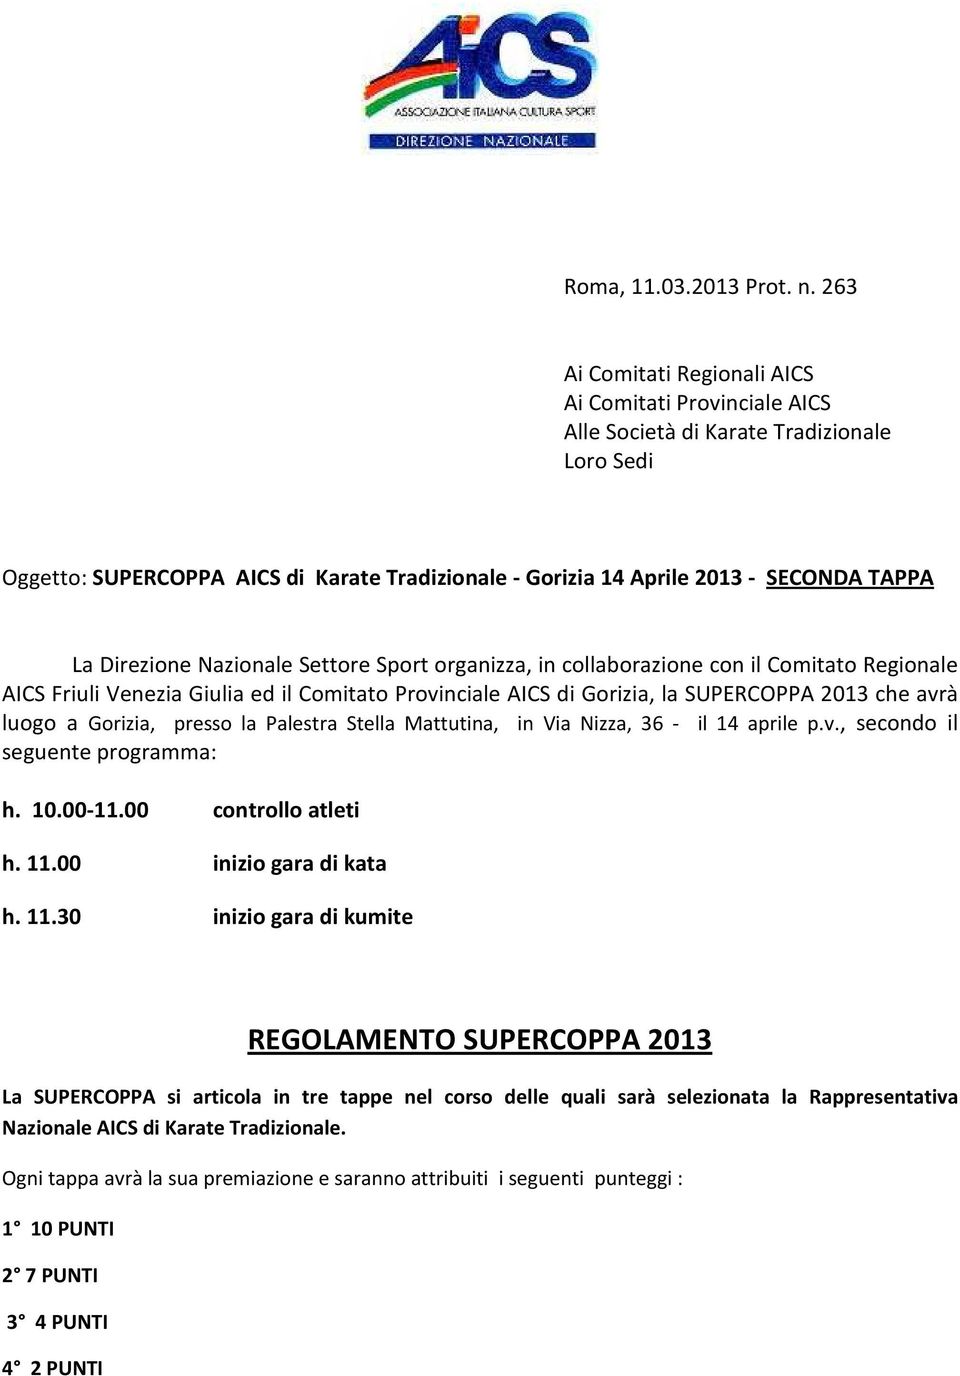 Direzione Nazionale Settore Sport organizza, in collaborazione con il Comitato Regionale AICS Friuli Venezia Giulia ed il Comitato Provinciale AICS di Gorizia, la SUPERCOPPA 2013 che avrà luogo a